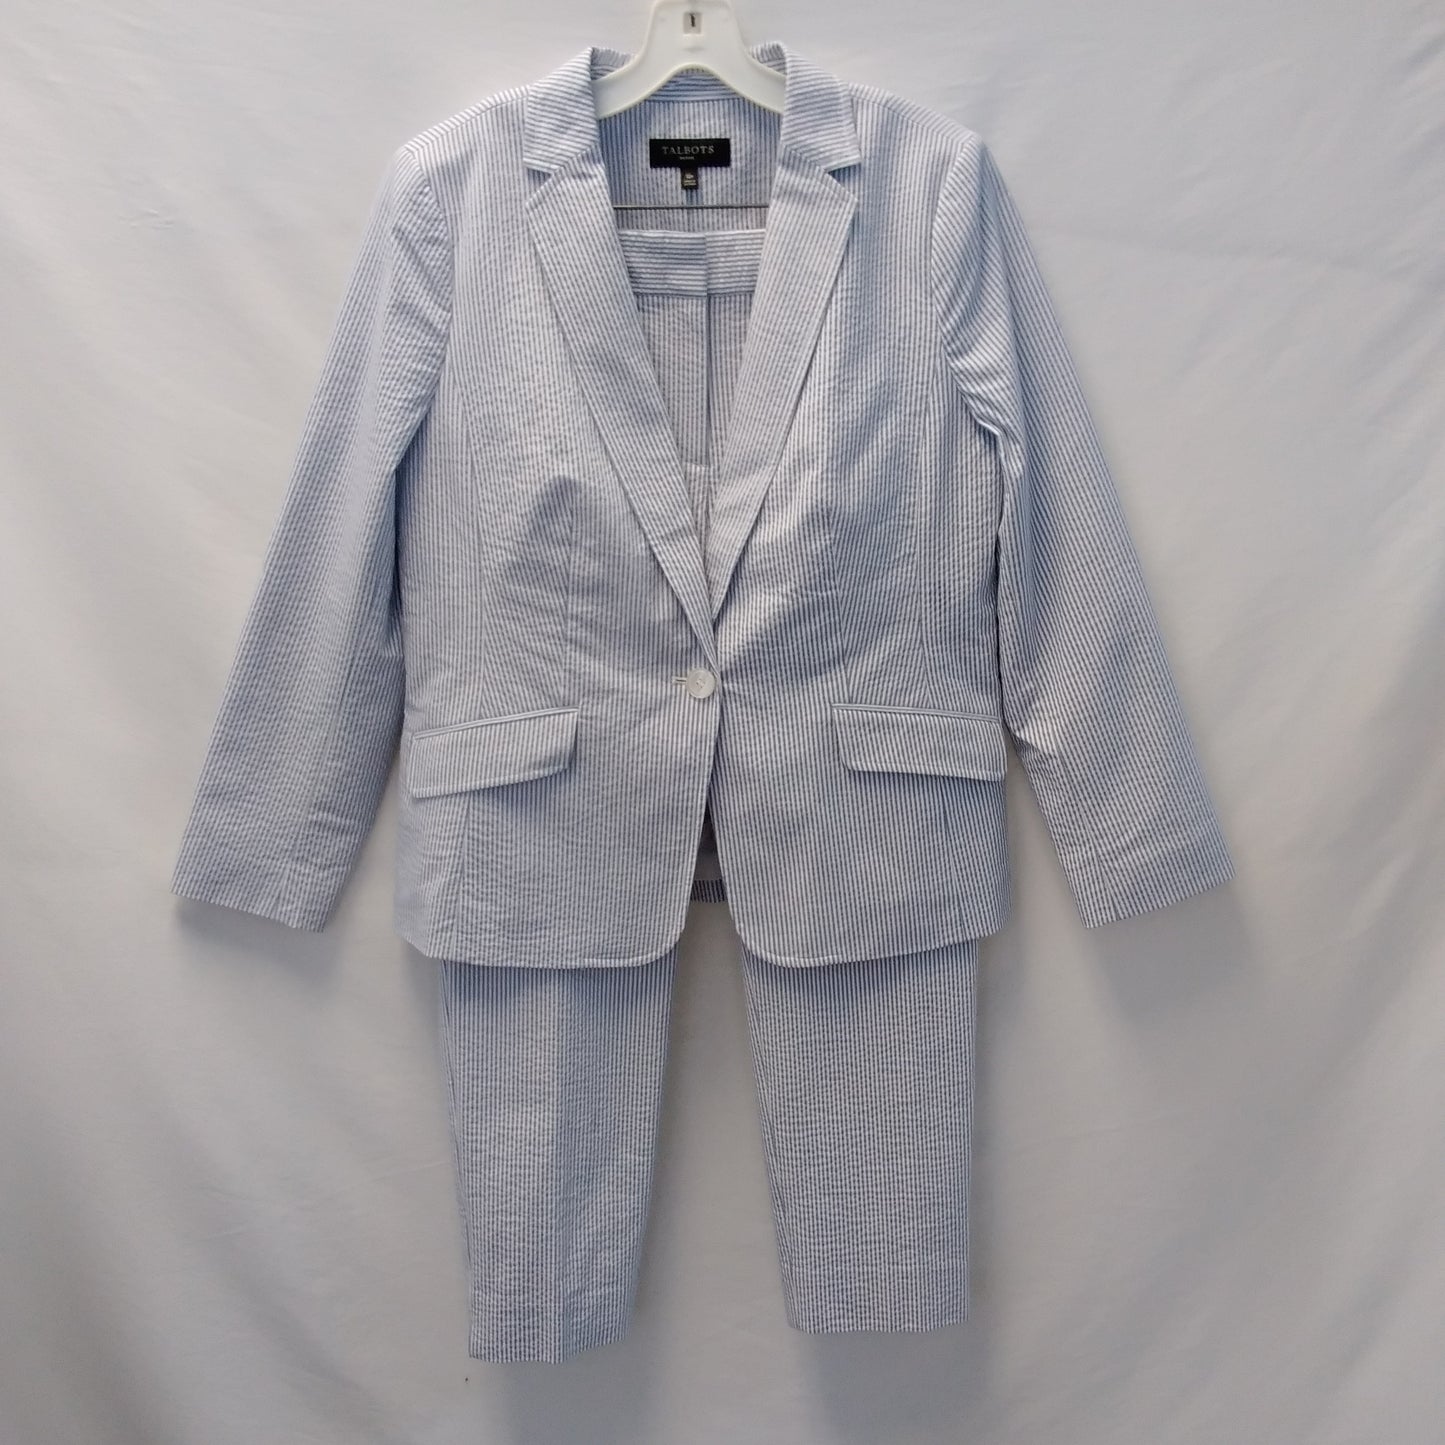 NWT - Talbots Petite Women's Blue Striped Blazer and Pants - Pants size: 10 Blazer size: 12